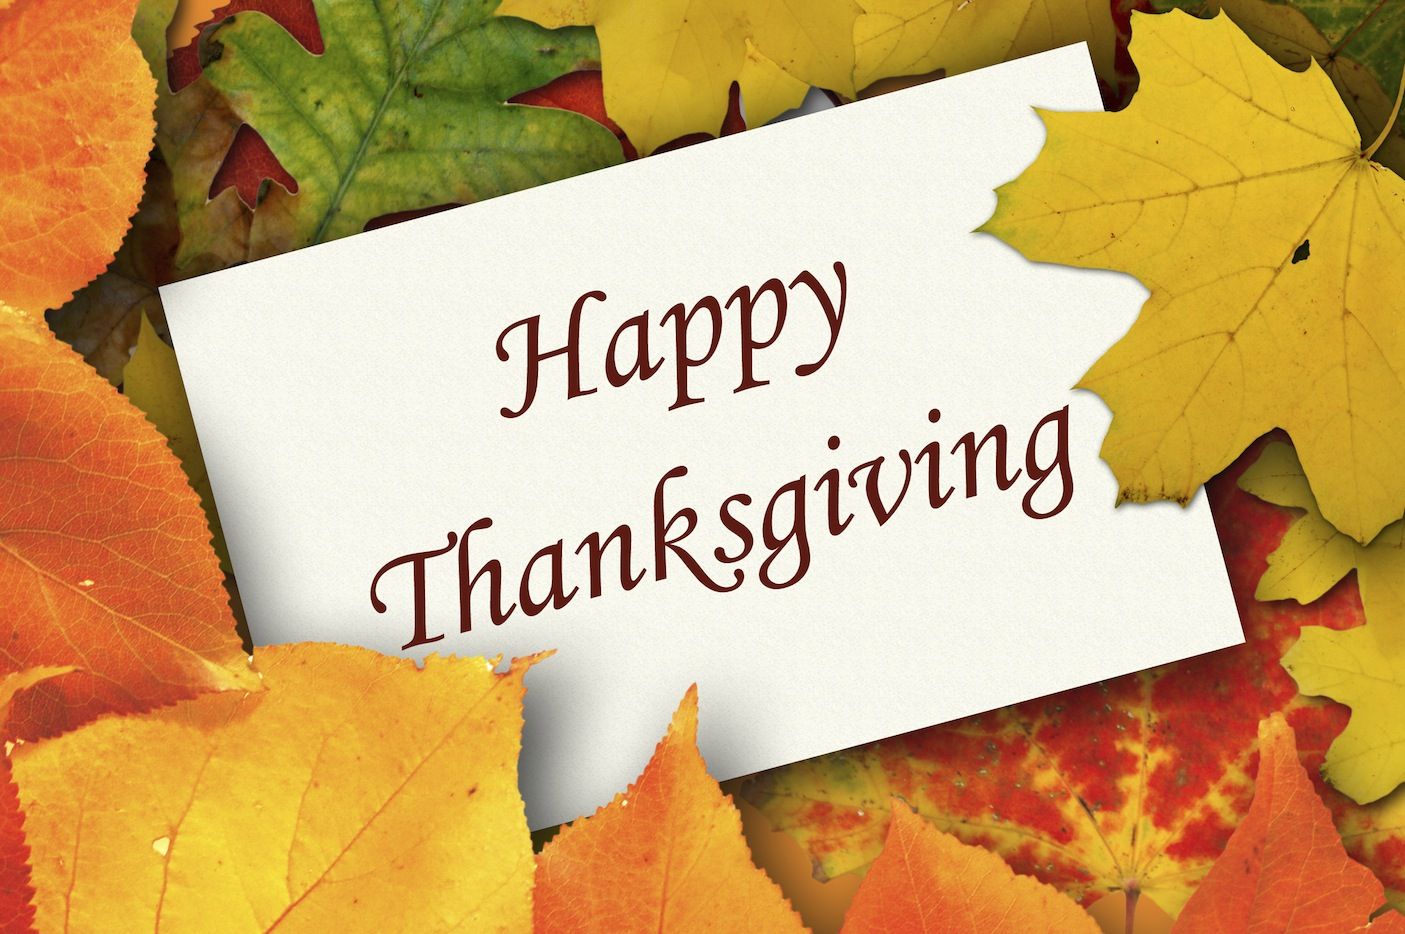 Download Free Thanksgiving Image. Thanksgiving HD Image